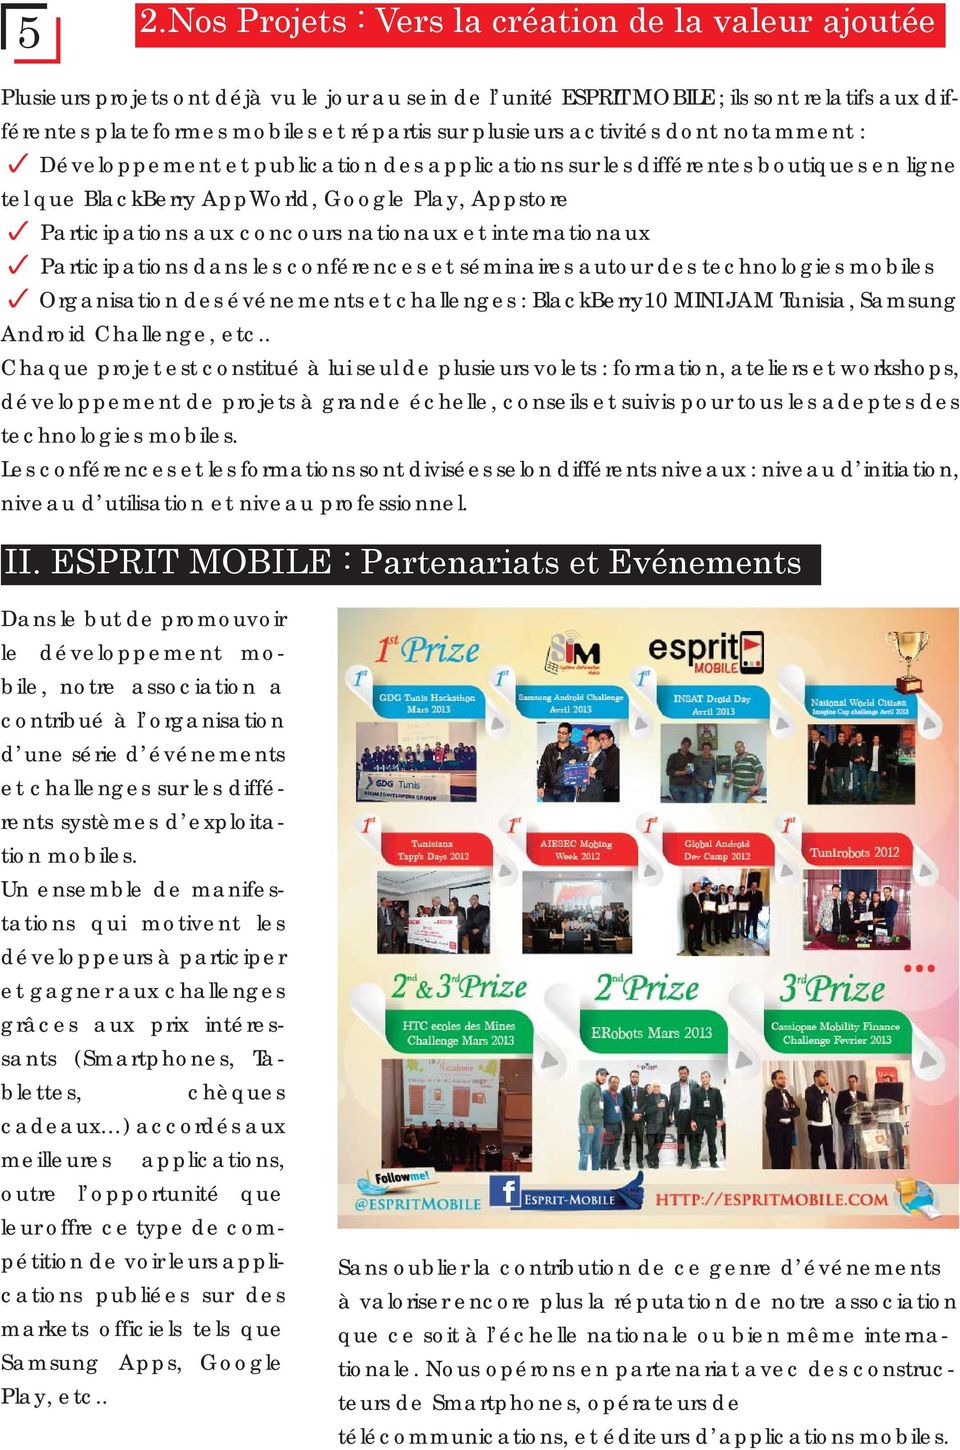 concours nationaux et internationaux Participations dans les conférences et séminaires autour des technologies mobiles Organisation des événements et challenges : BlackBerry10 MINI JAM Tunisia,